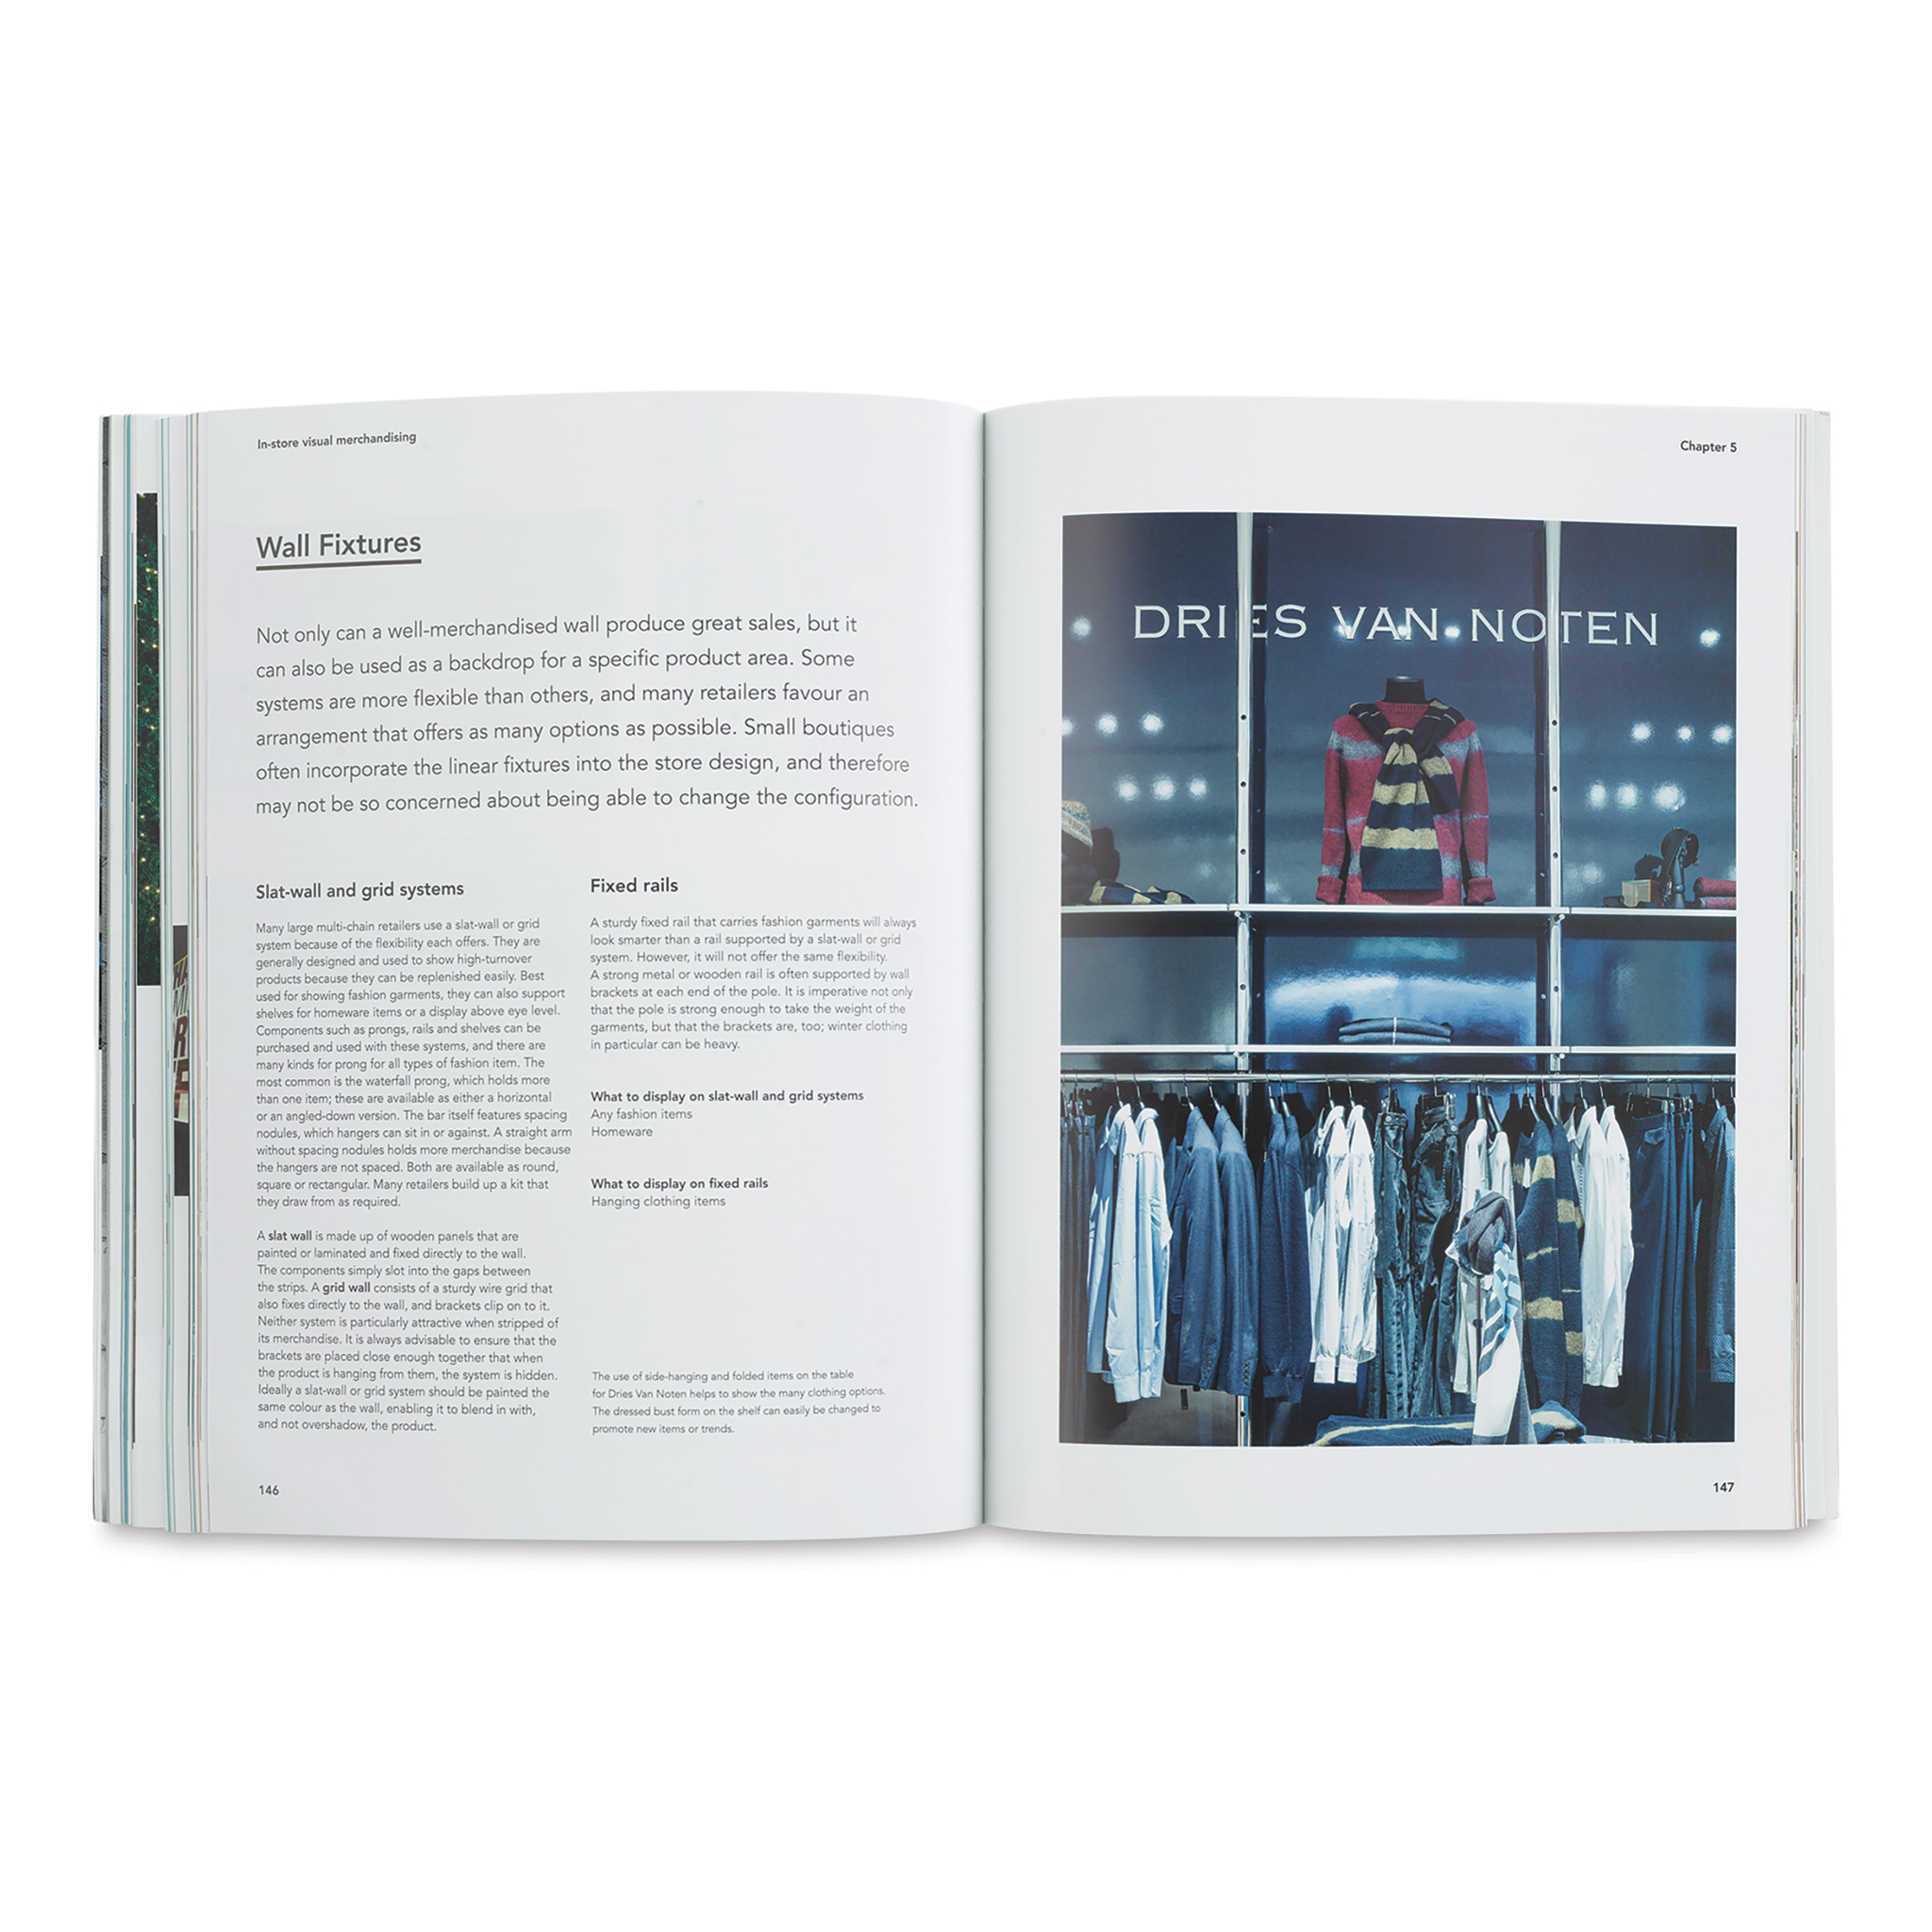 E Book Visual Merchandising Atualizado 20180613195103, PDF, Merchandising